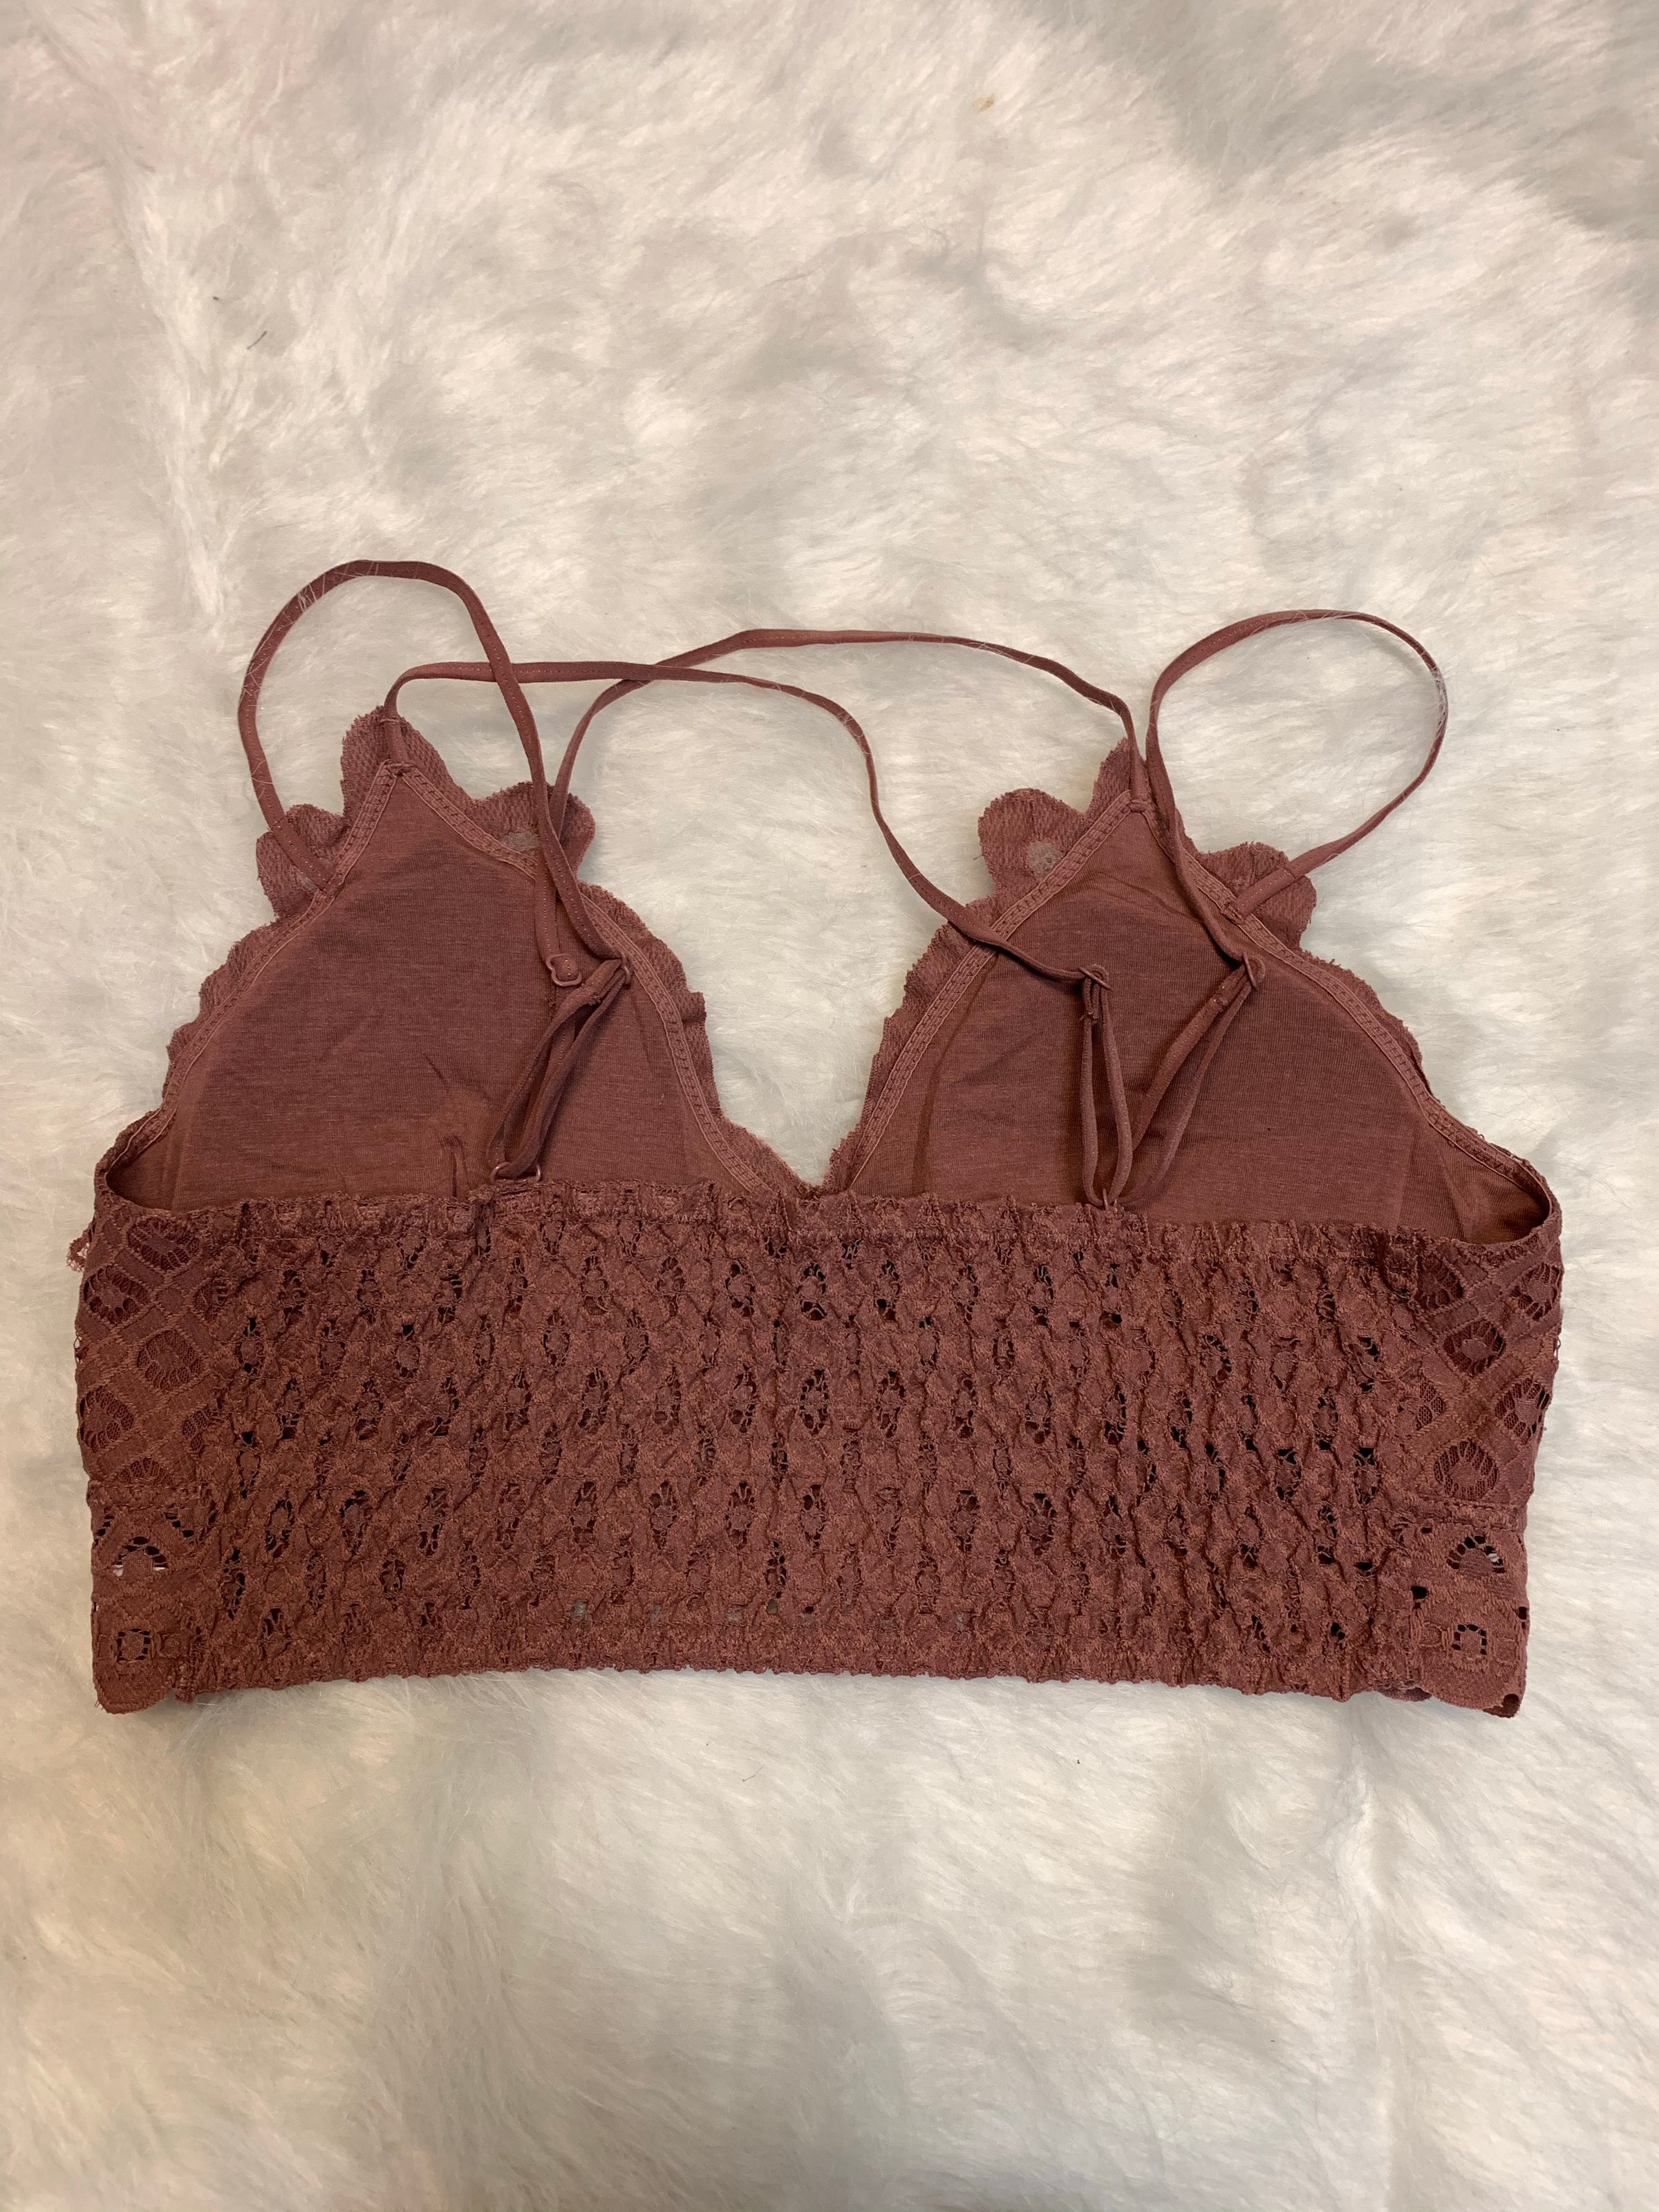 Plus Size Crocheted Lace Bralettes – Plethora Boutique